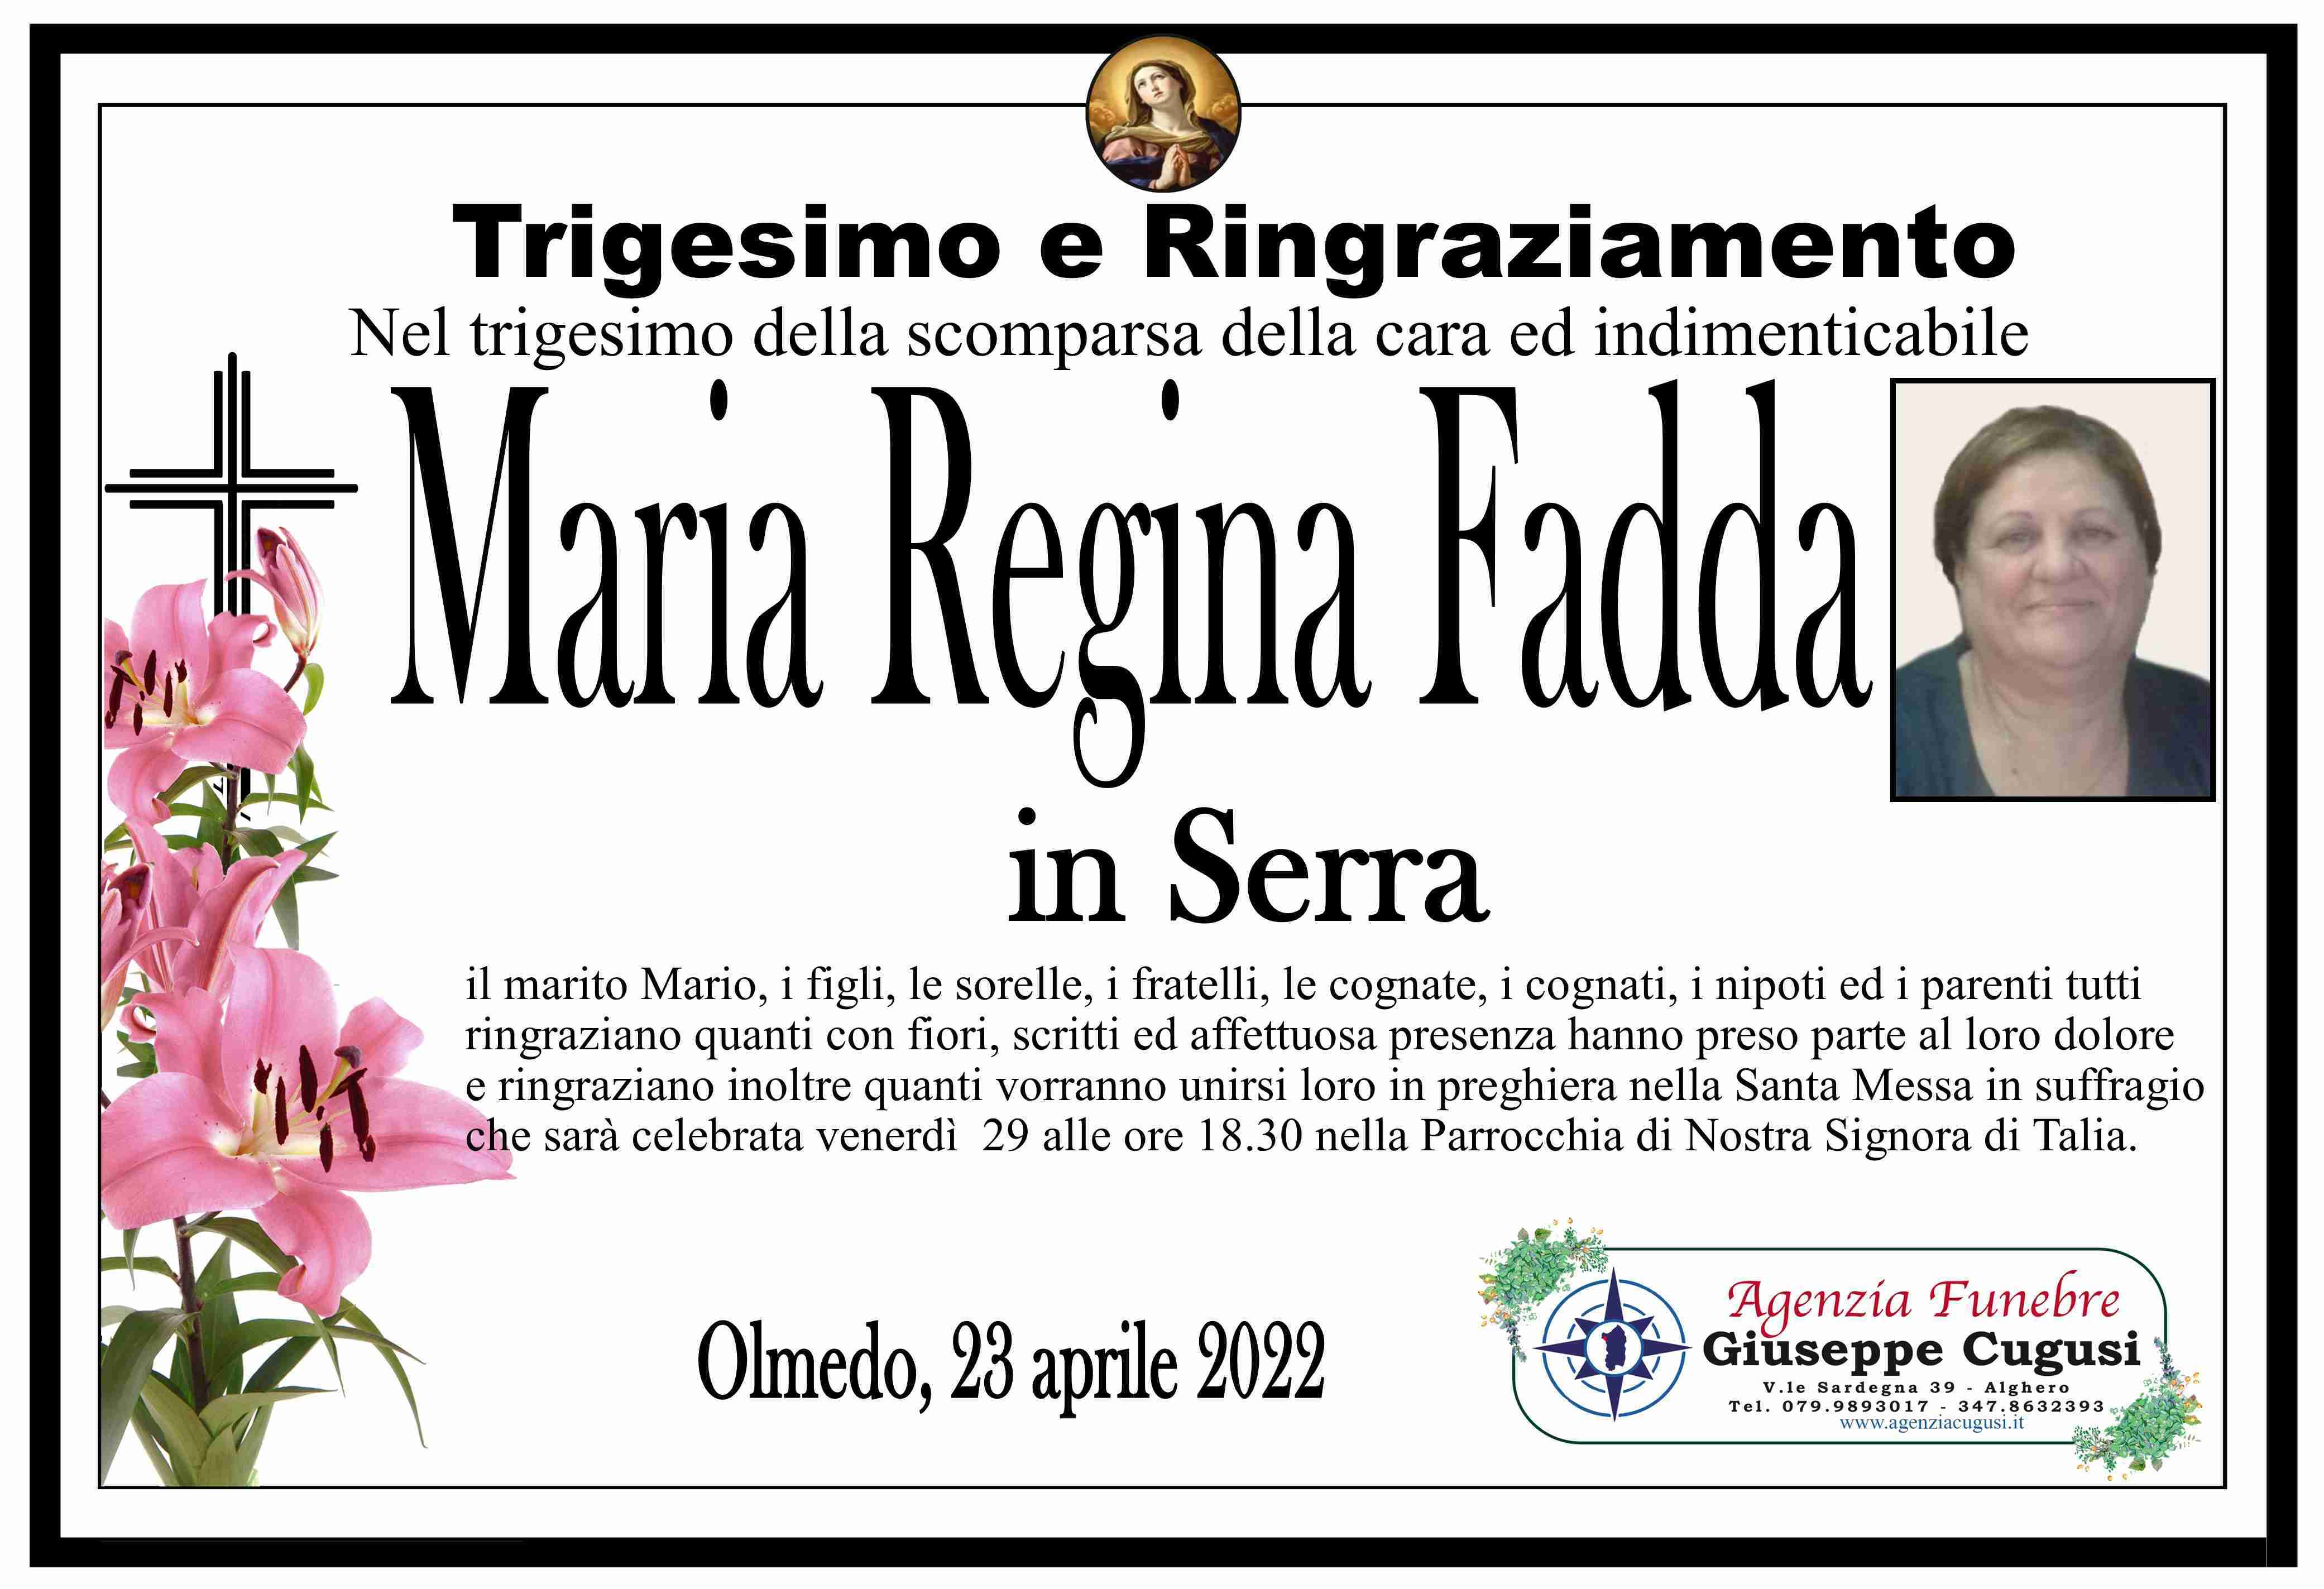 Maria Regina Fadda